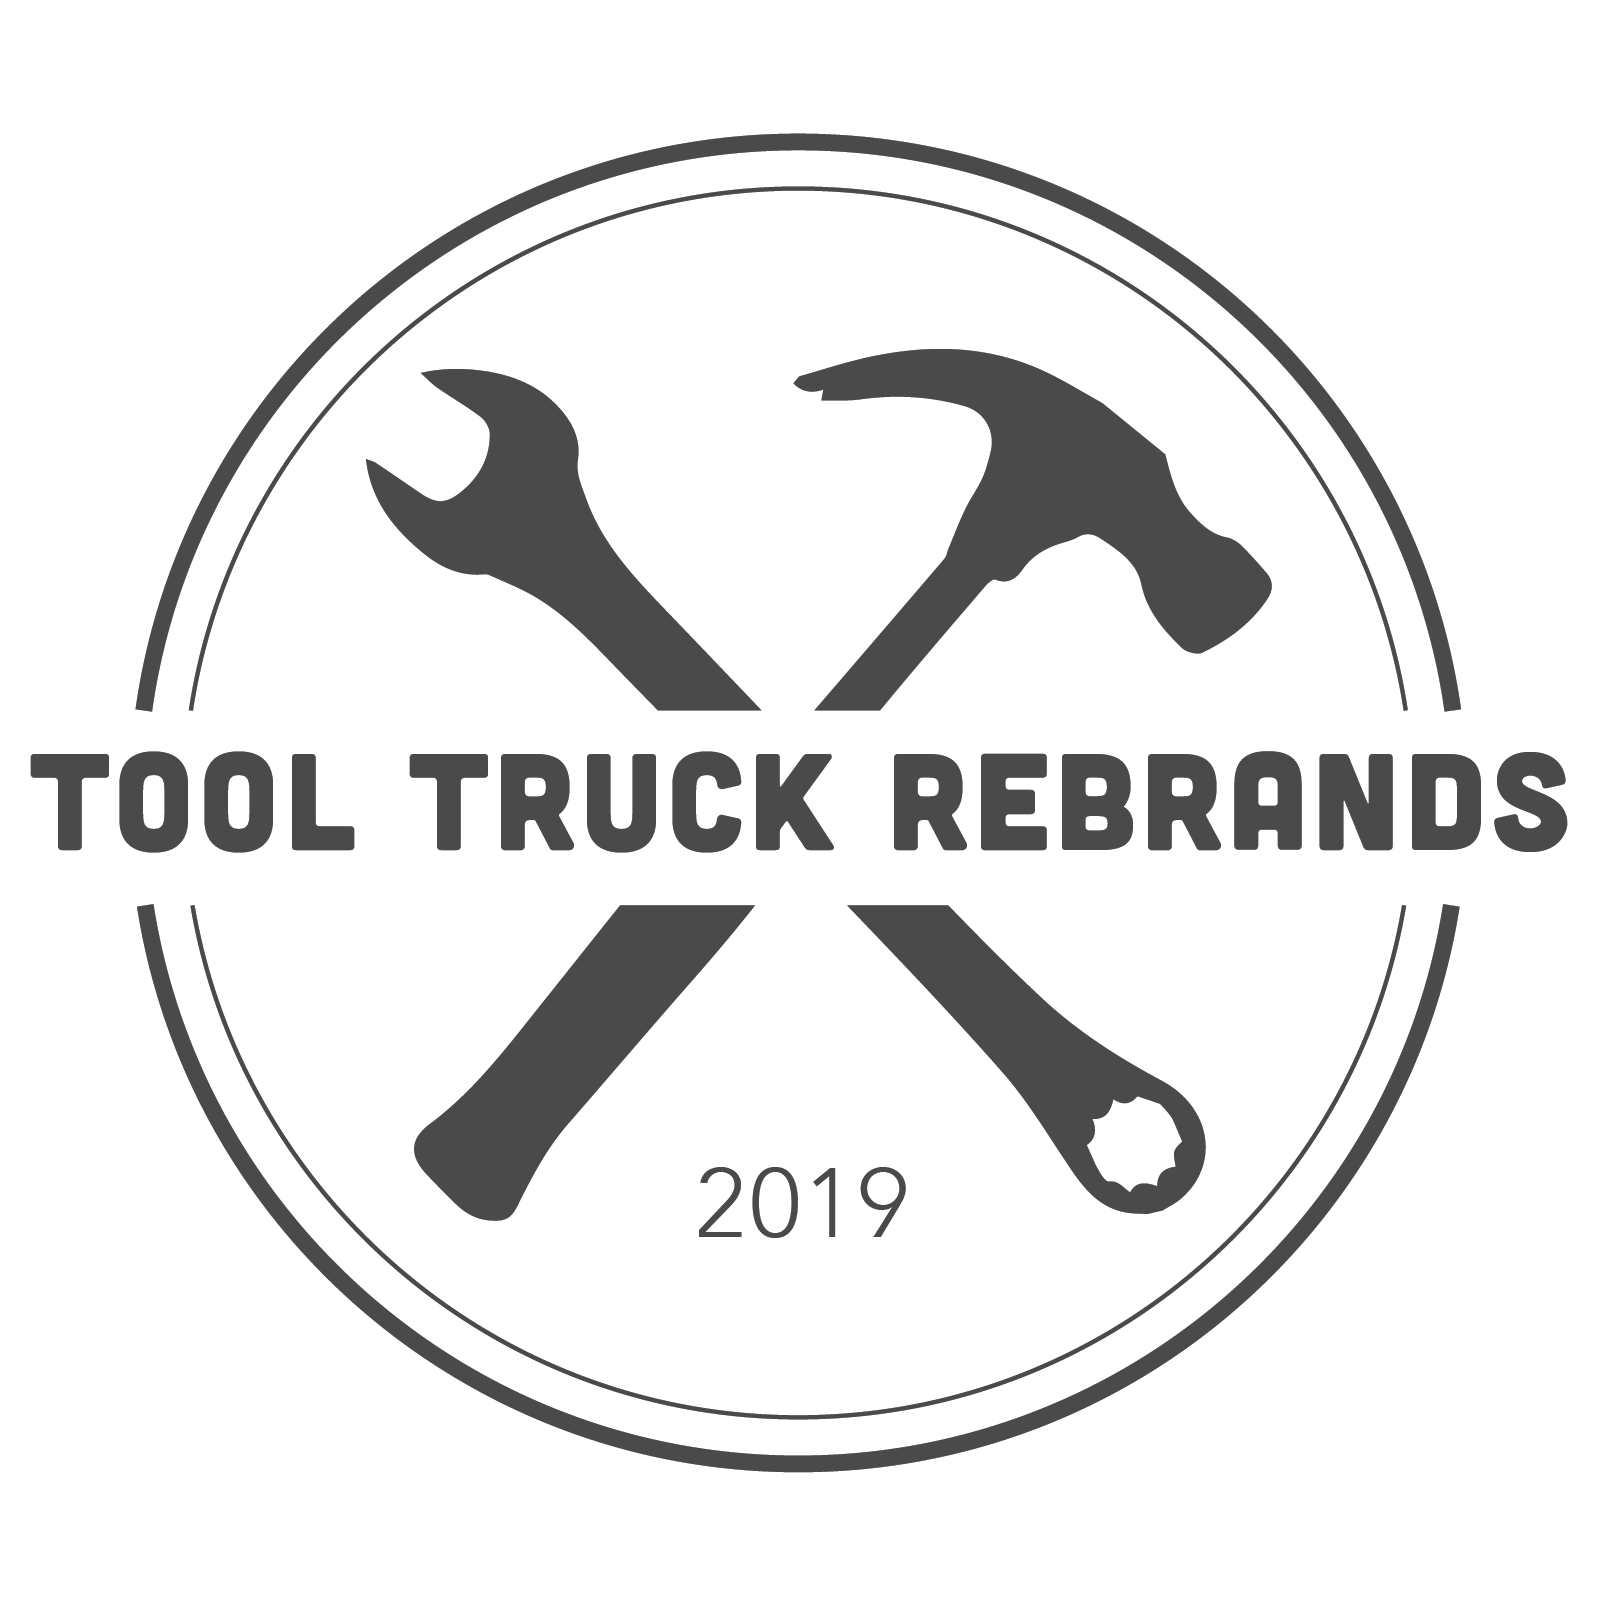 Tool Truck Rebrands